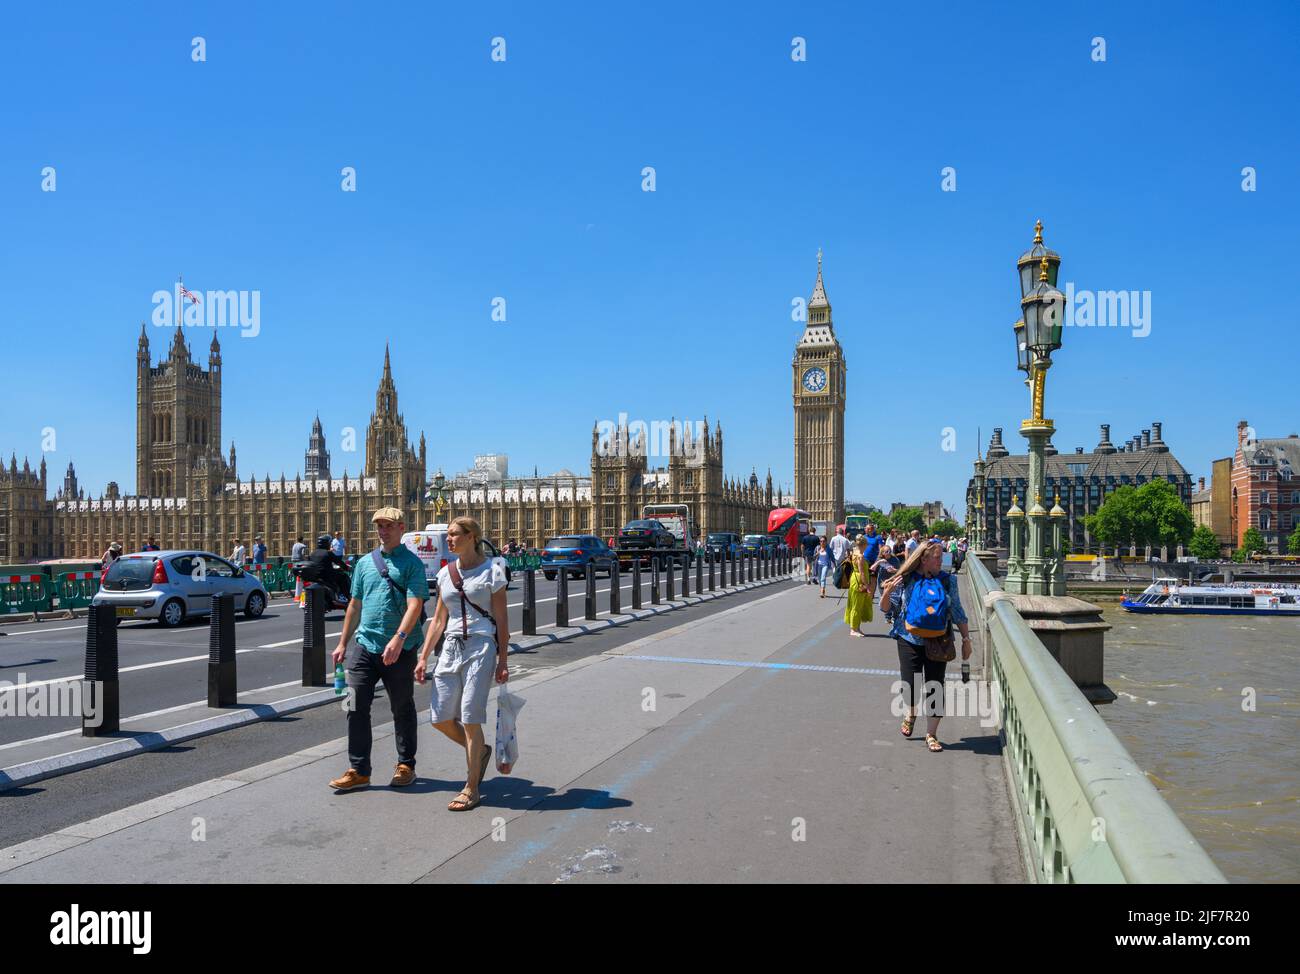 Les chambres du Parlement (Palais de Westminster) depuis le pont de Westminster, la Tamise, Londres, Angleterre, Royaume-Uni Banque D'Images